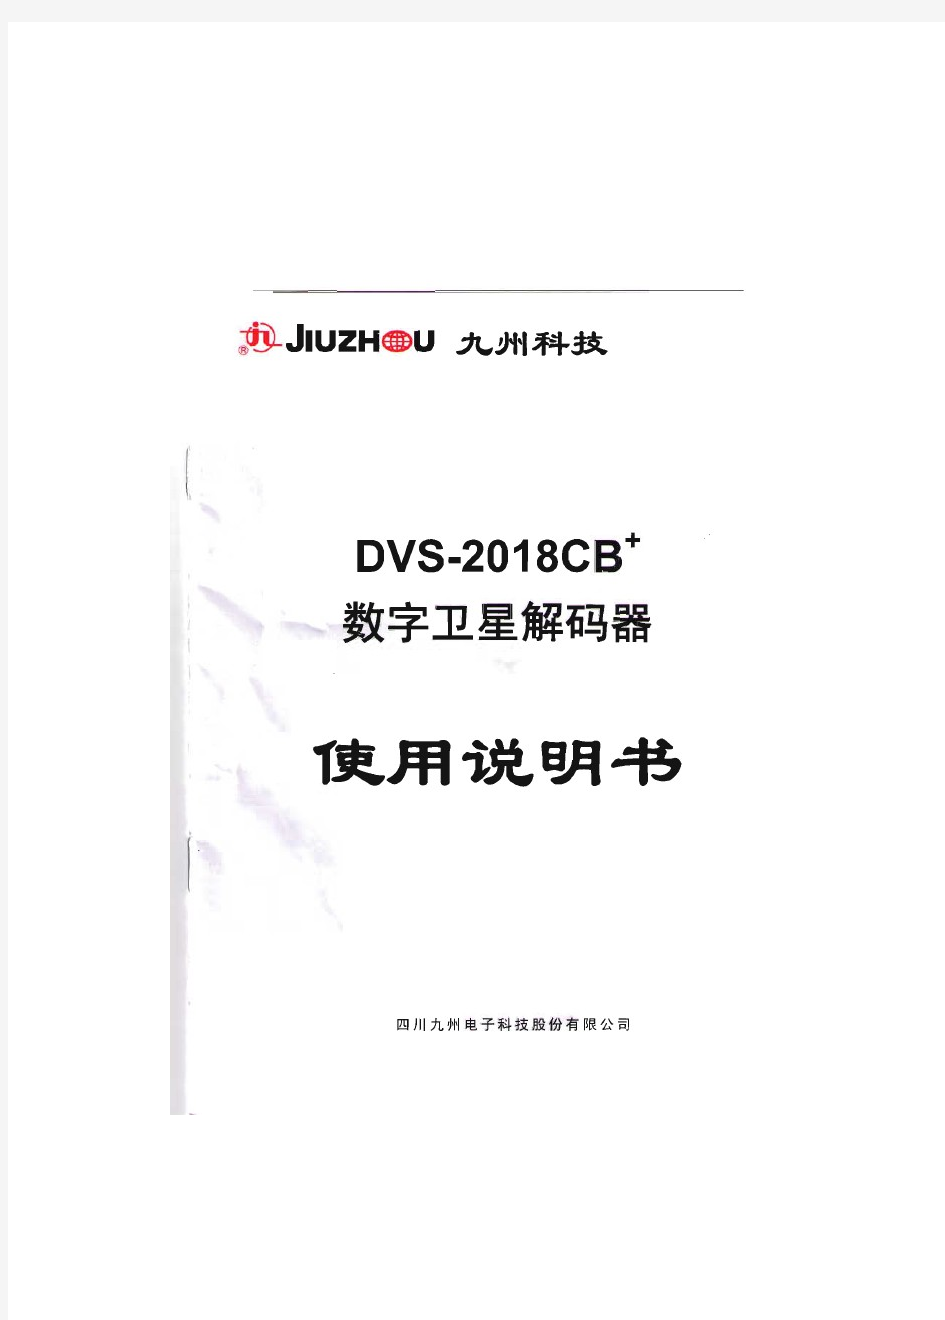 九州DVS-2018CB+数字卫星解码器说明书